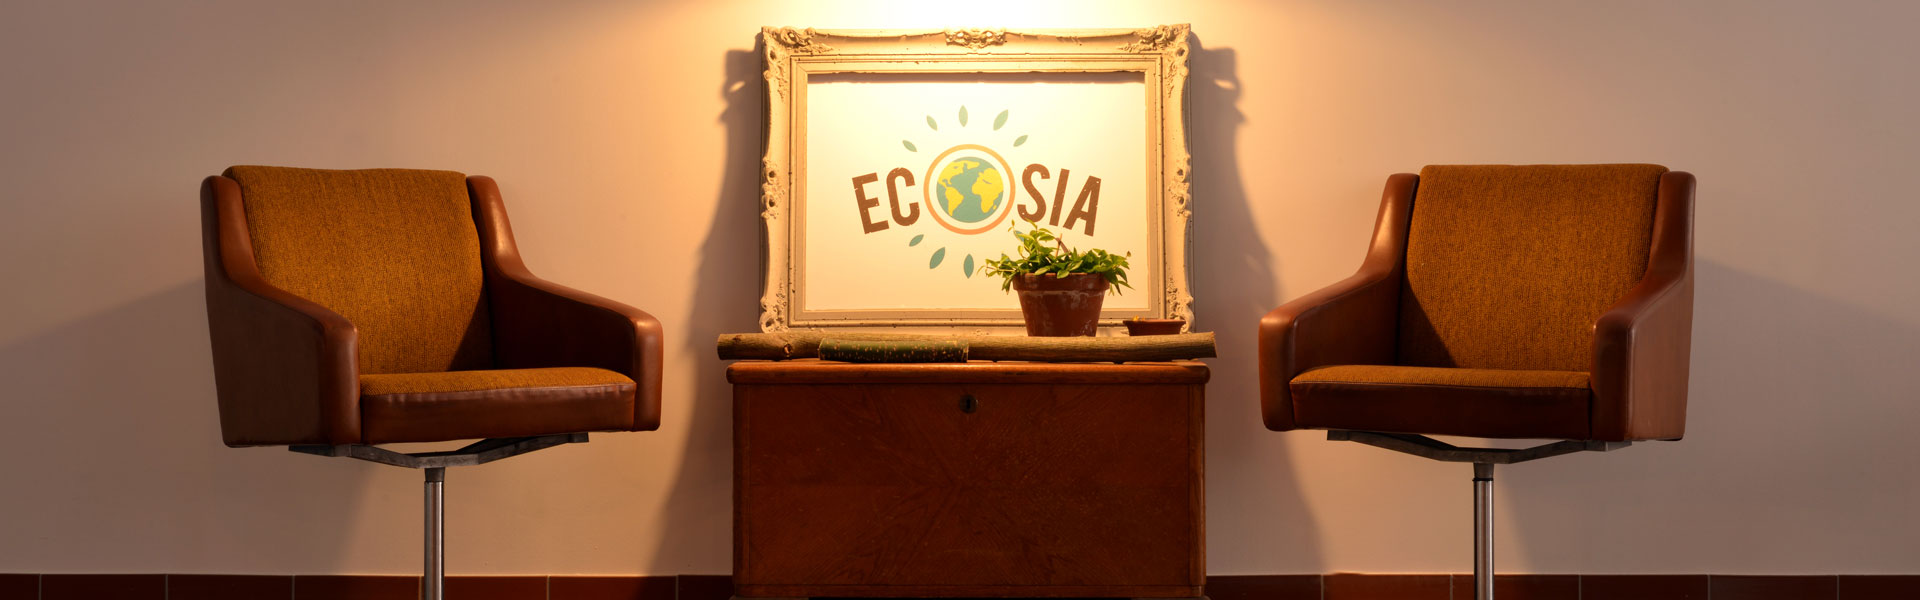 ökoRAUSCH Blog – ecosia